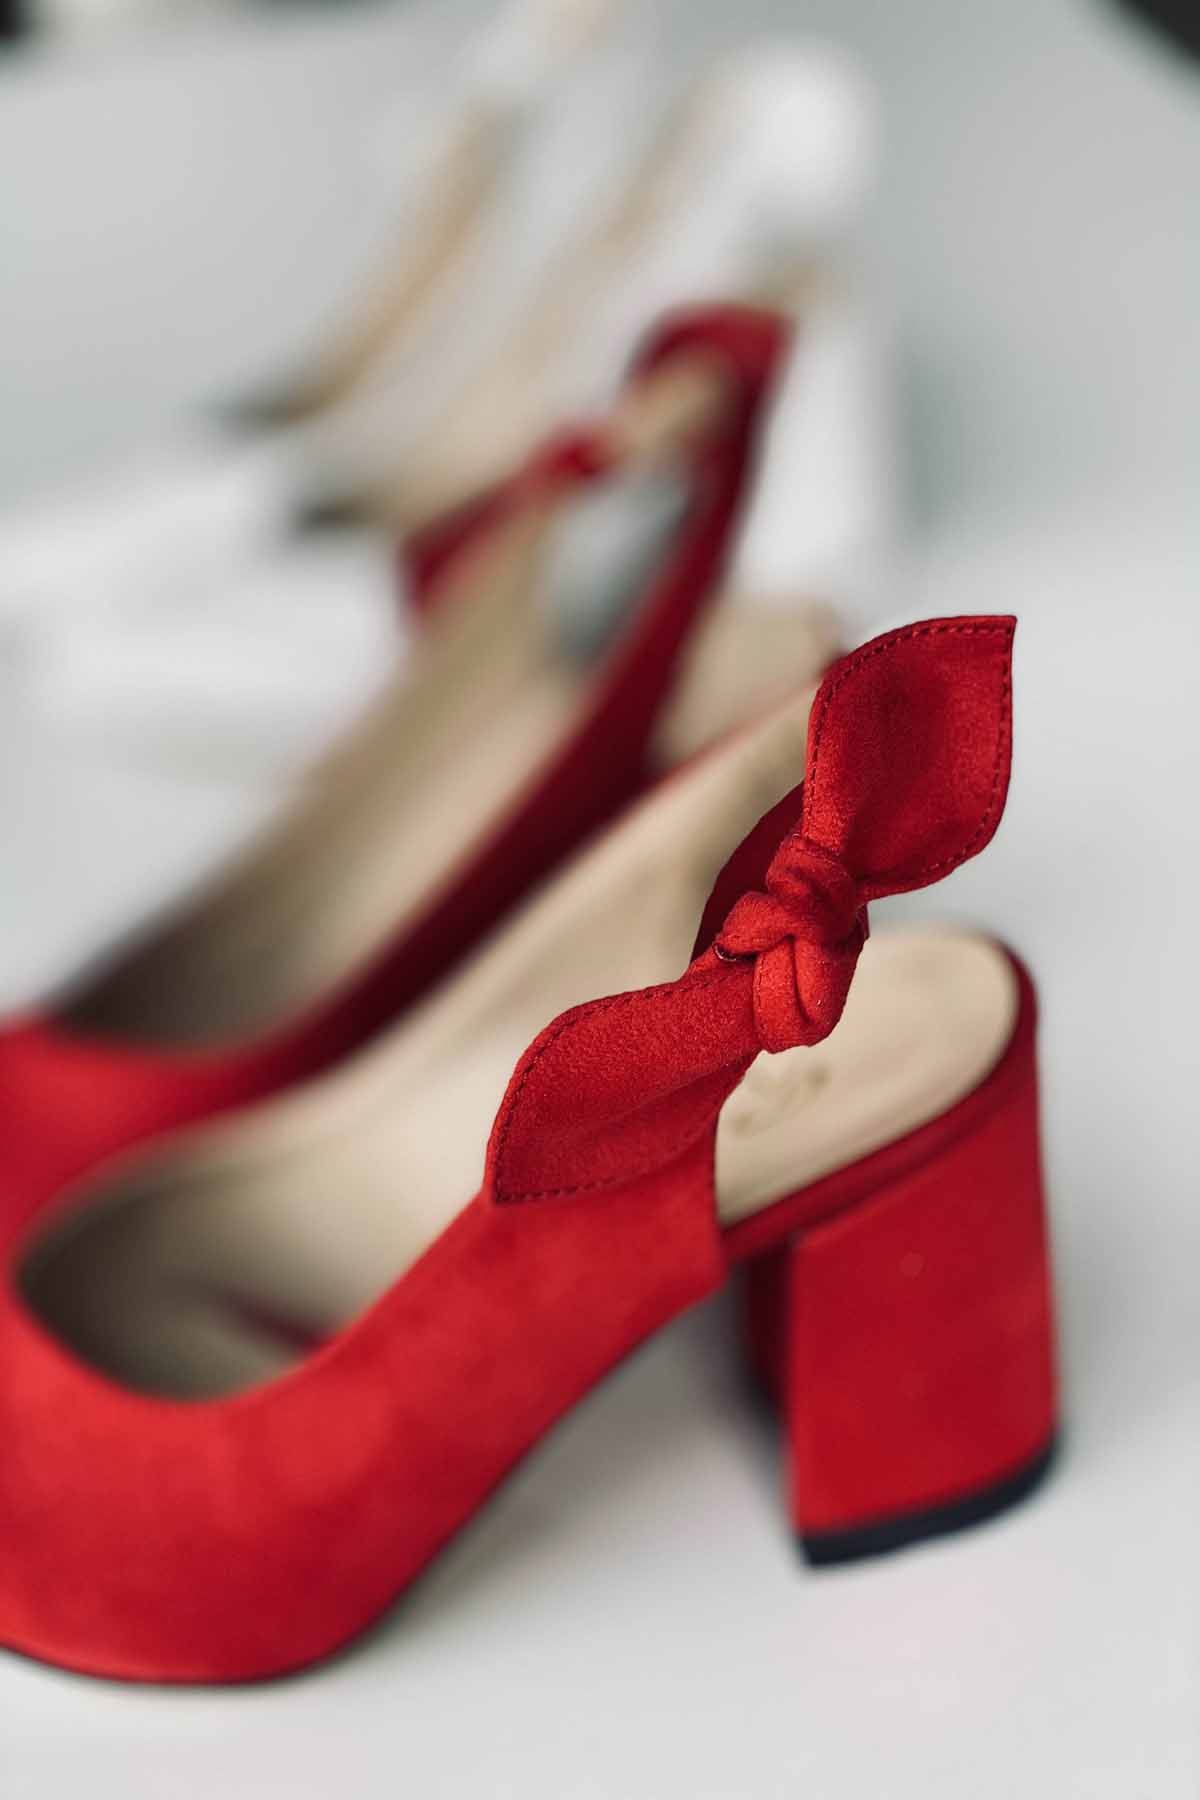 Mida Shoes Y109 Kırmızı Süet Topuklu Ayakkabı